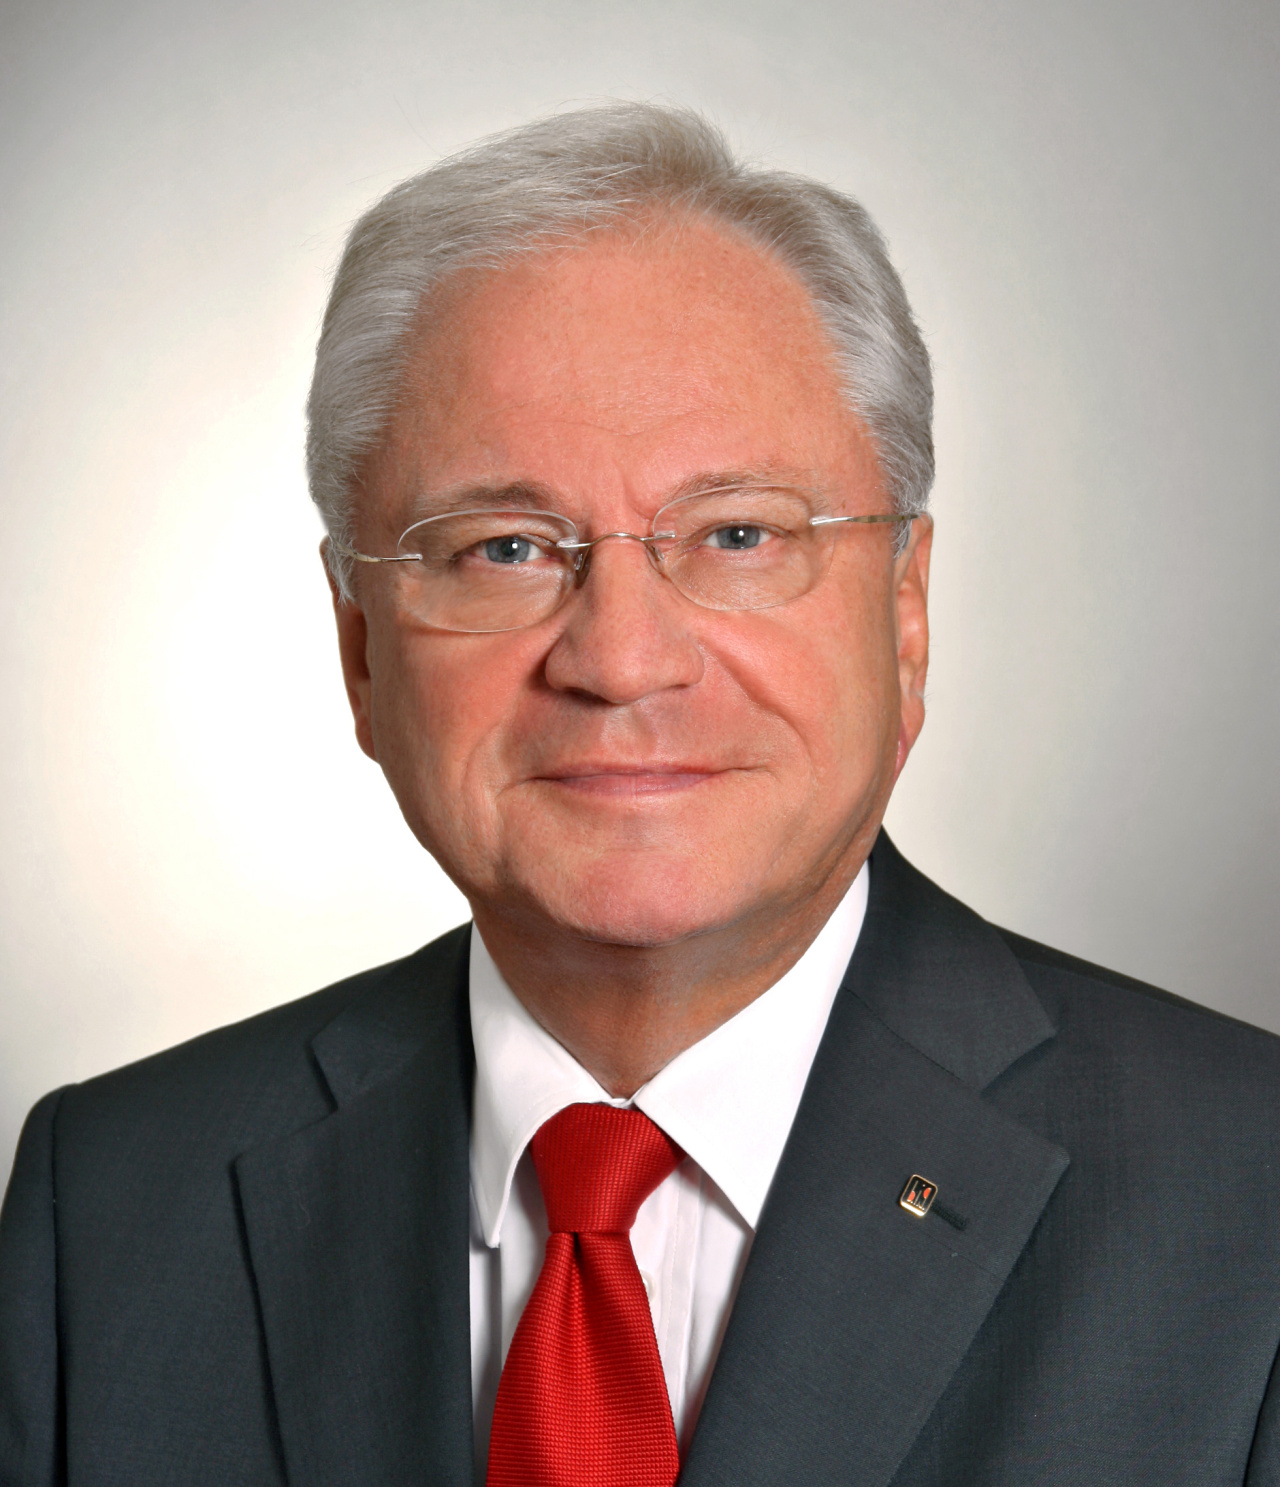 Portrait eines Mannes mit Brille und roter Krawatte